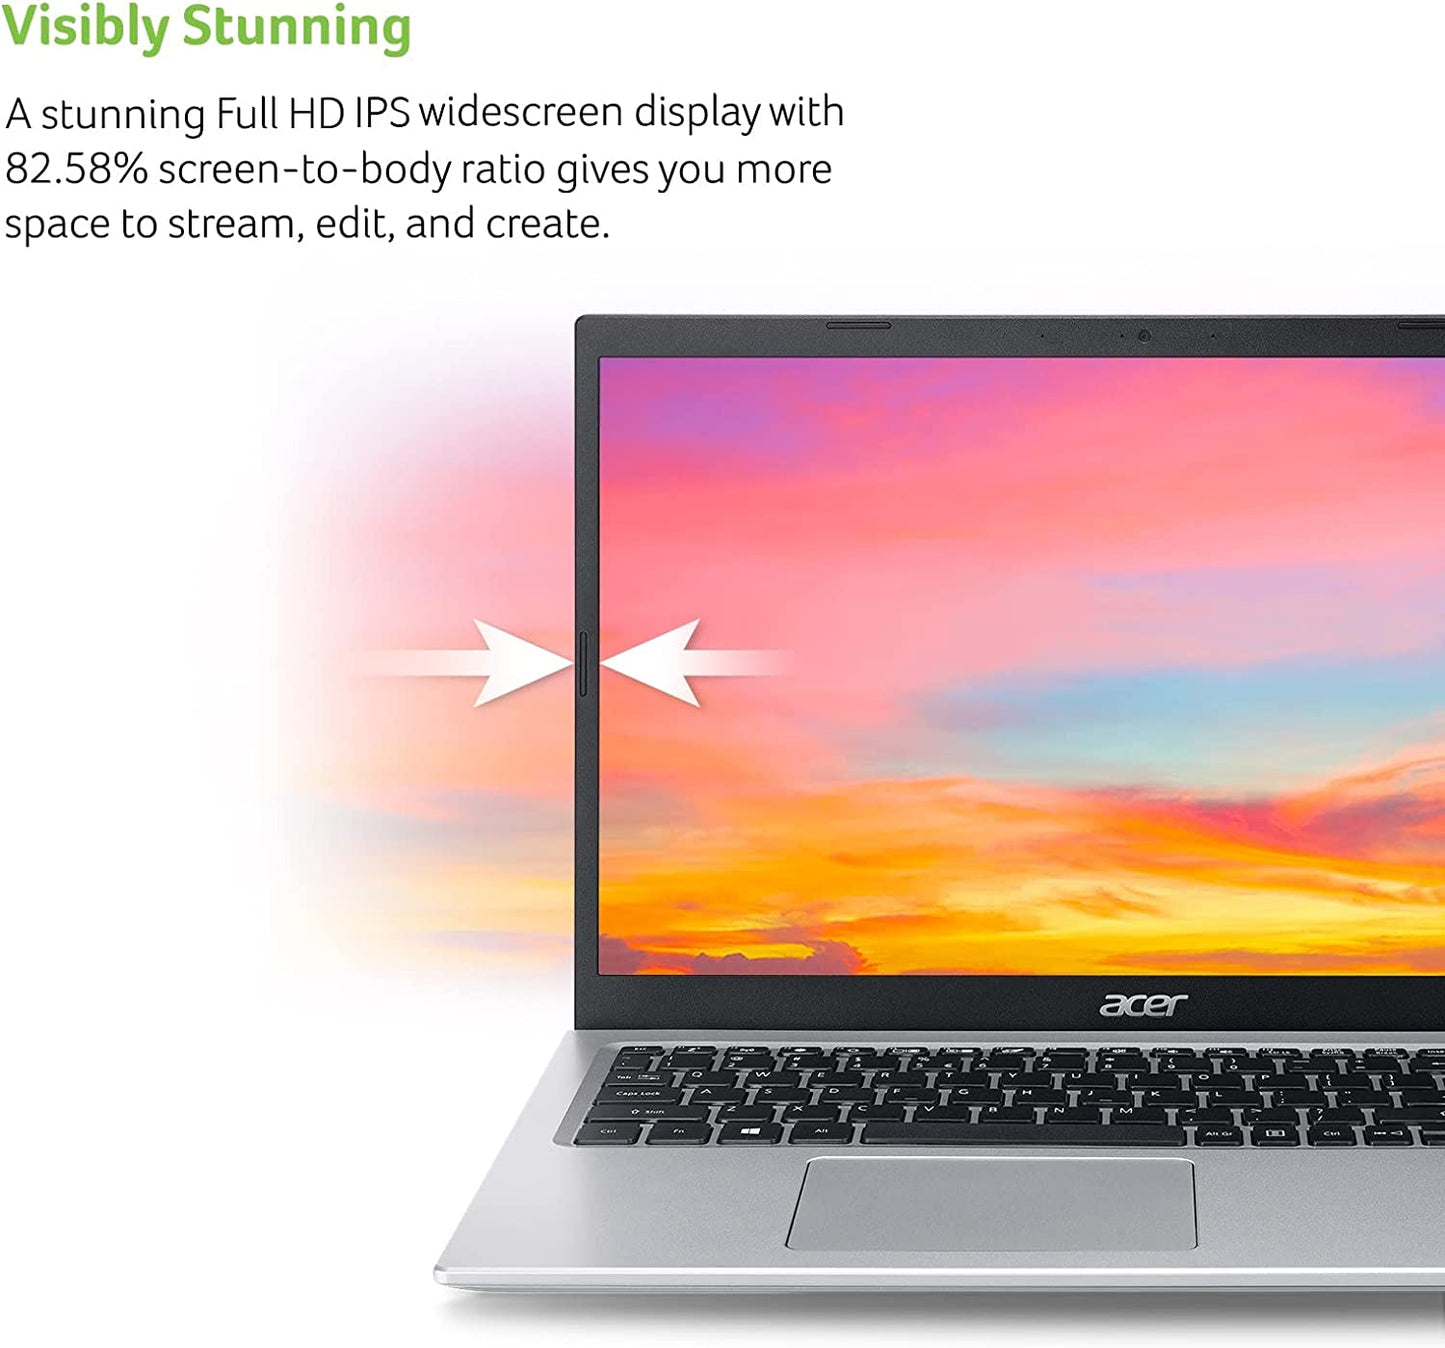 Acer Aspire 5 A515-56-32DK - Laptop delgada con procesador Intel Core i3-1115G4 de 11.ª generación, pantalla IPS Full HD de 15,6 pulgadas, memoria DDR4 de 4 GB, unidad de estado sólido SSD NVMe de 128 GB